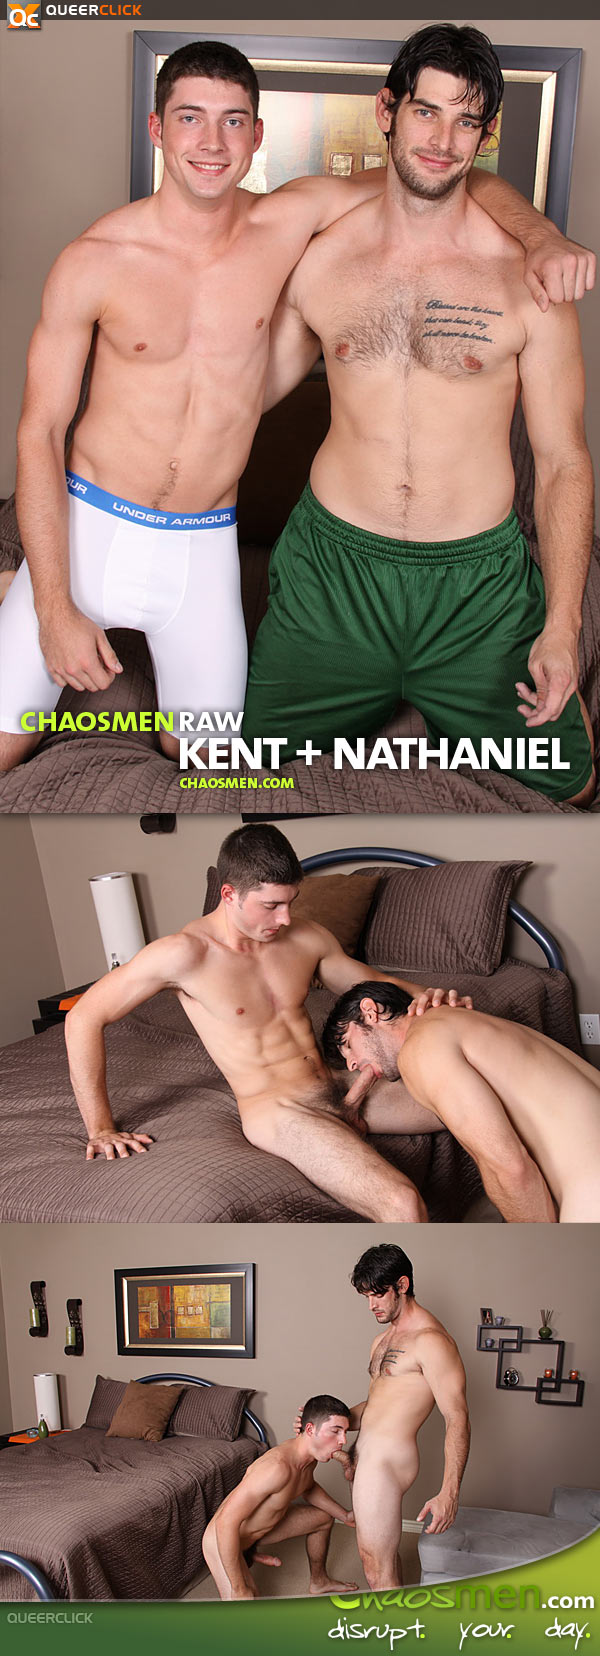 Kent and nathaniel chaos men